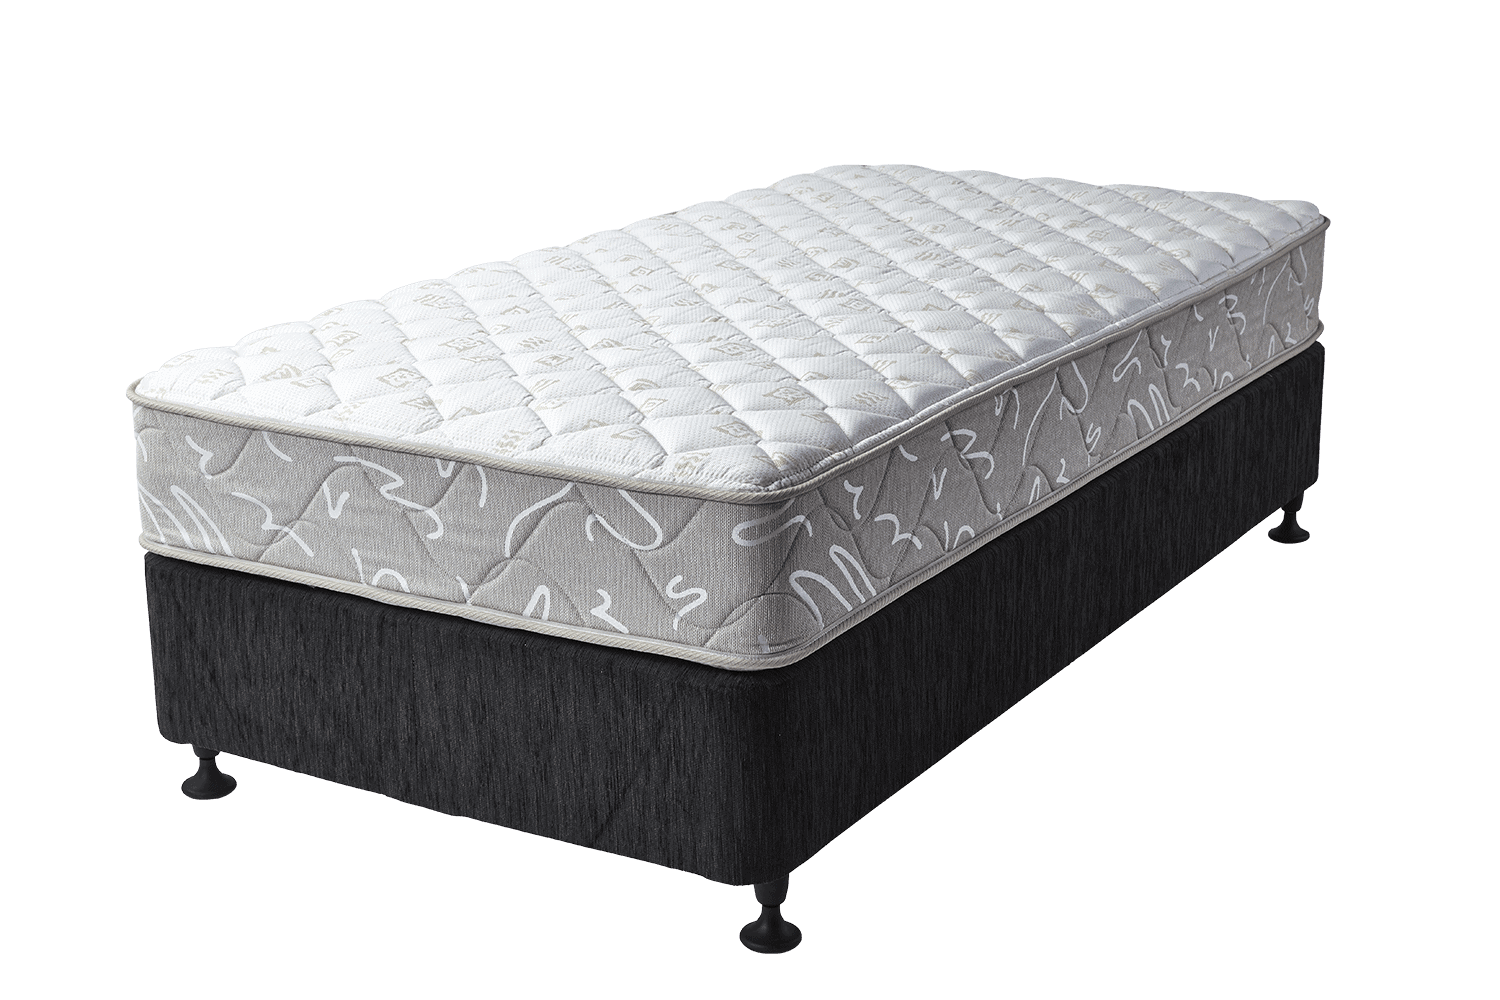 hillviee luxsuras firm mattress